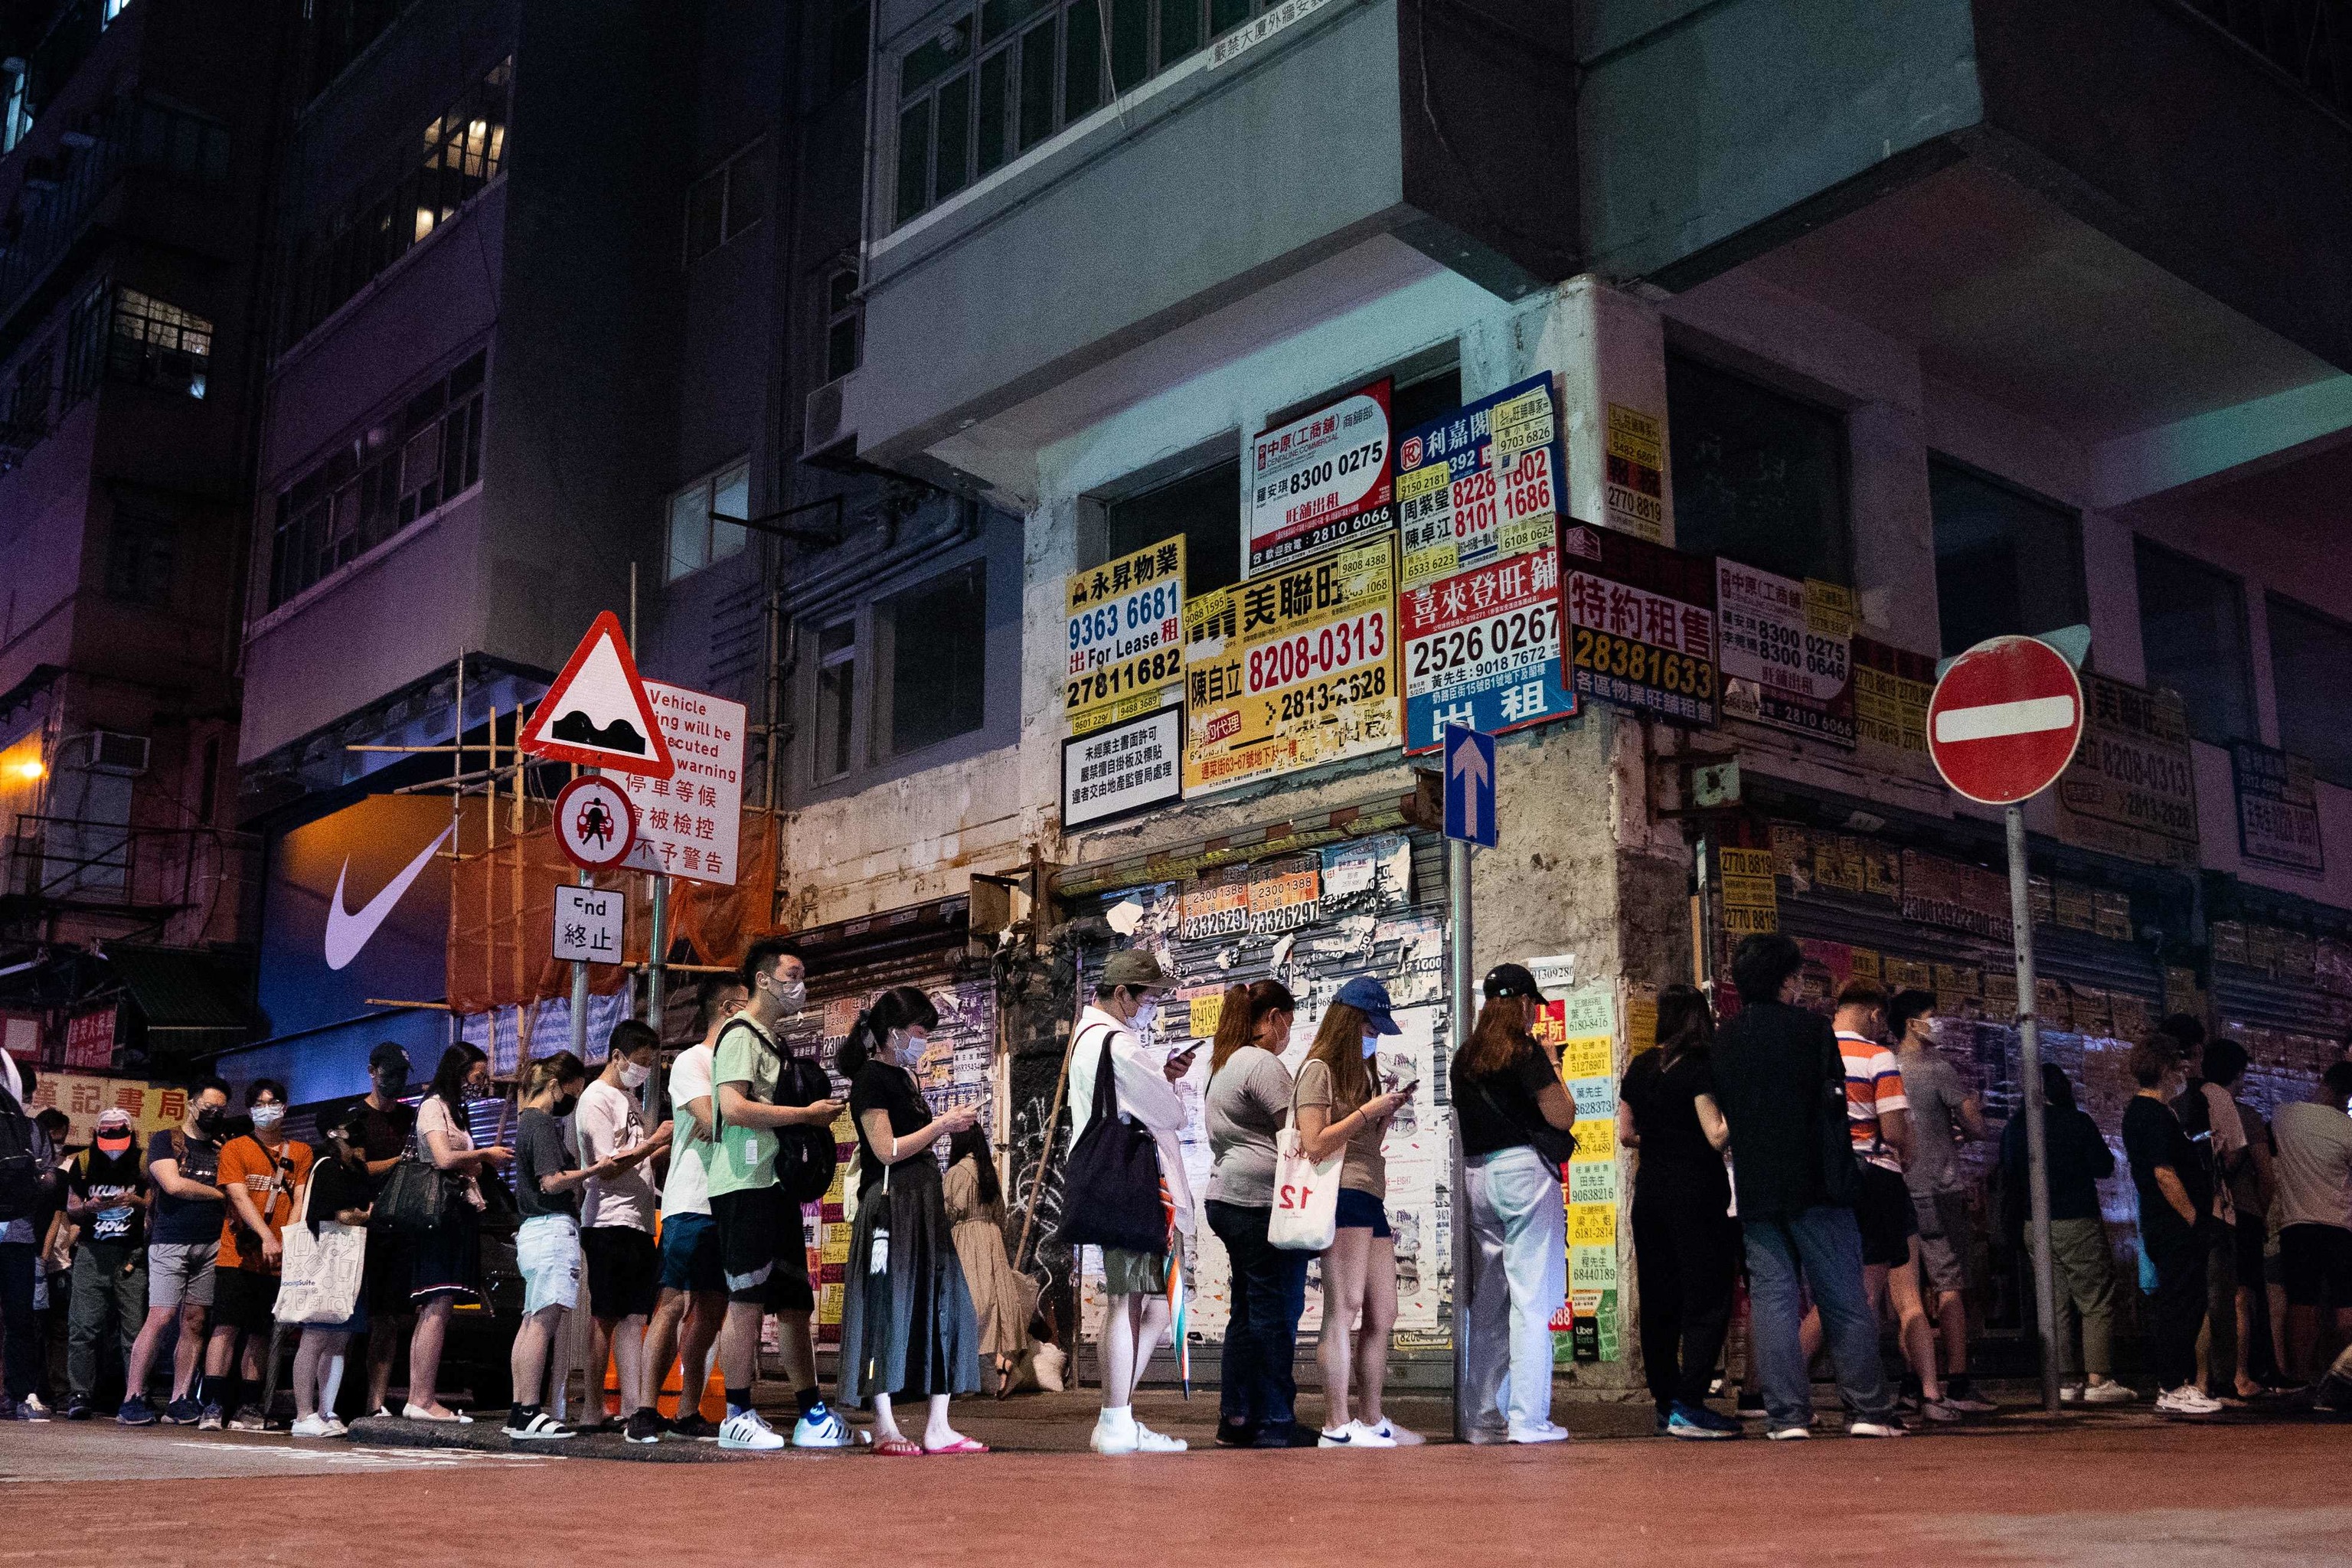 Personas en fila para comprar el Apple Daily en Hong Kong.